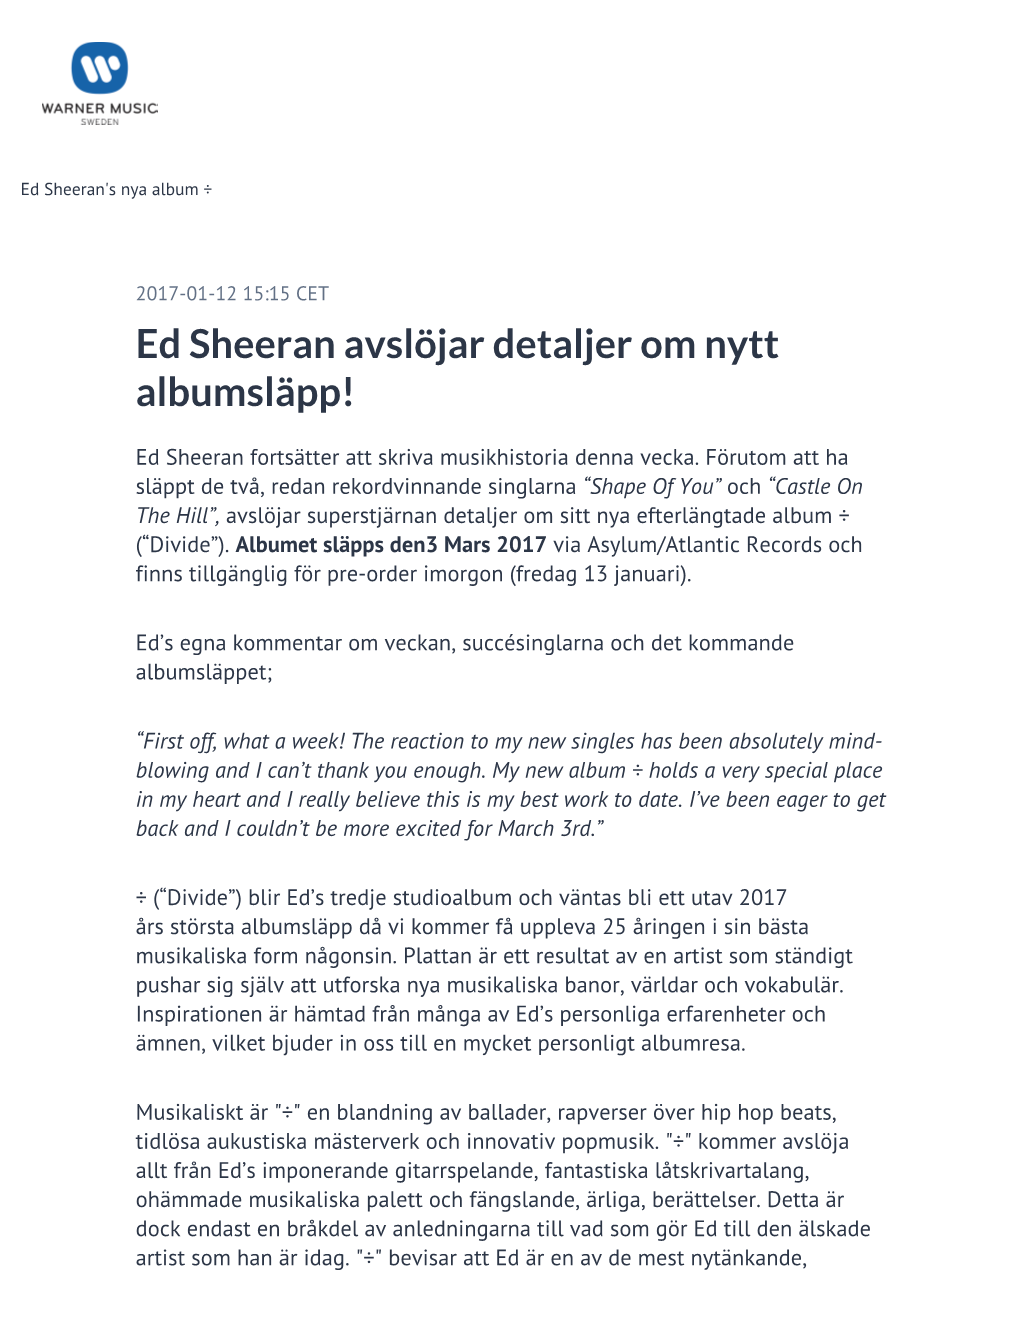 ​Ed Sheeran Avslöjar Detaljer Om Nytt Albumsläpp!